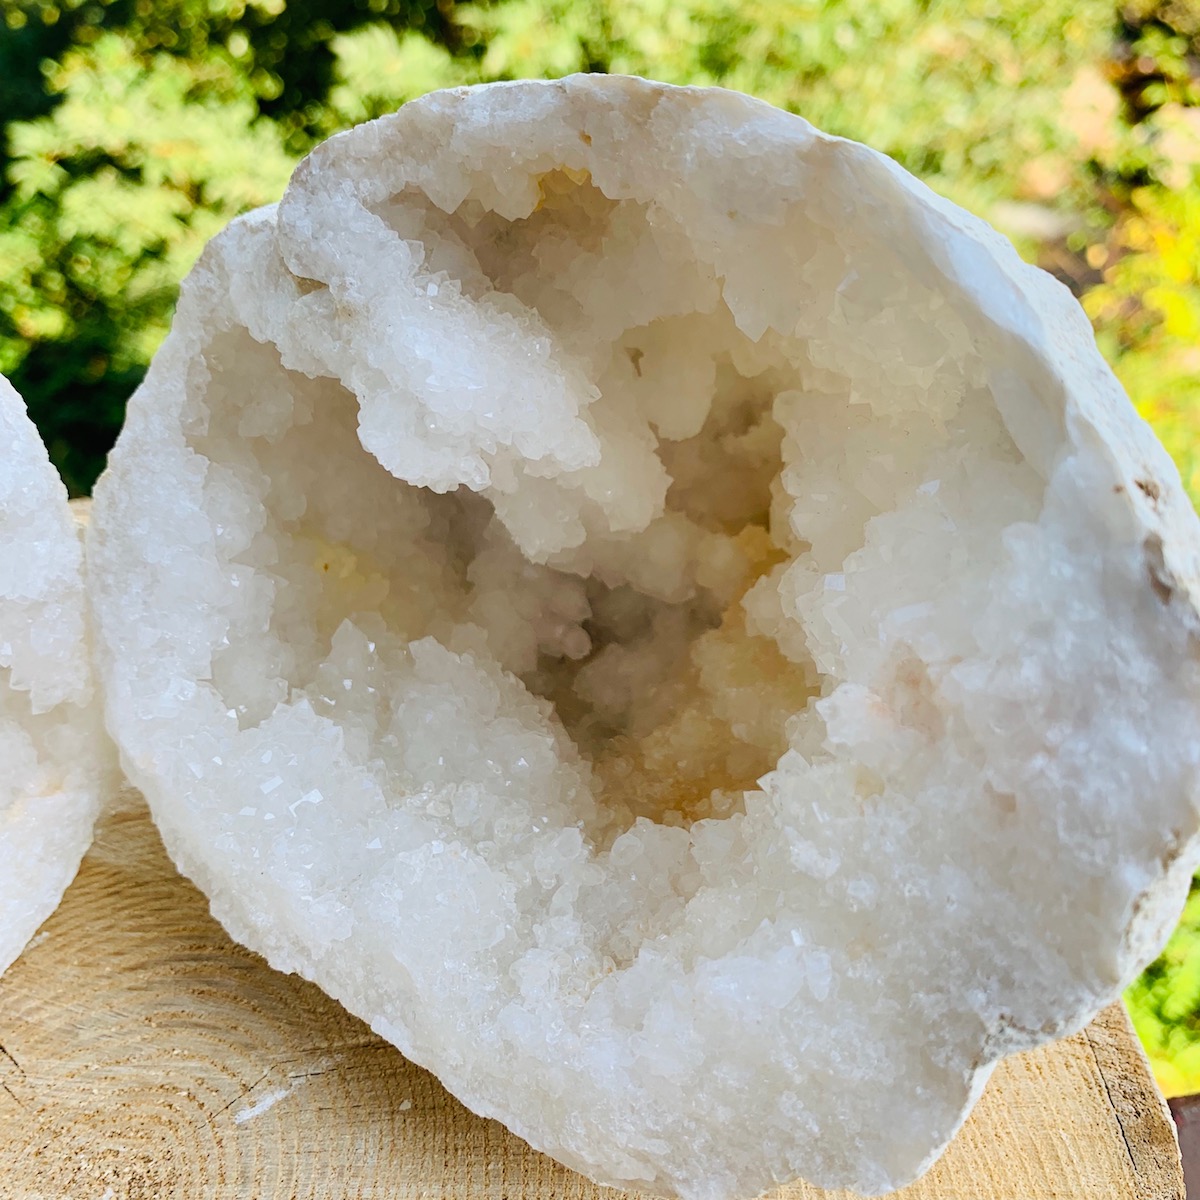 forme-libre-3-geode-quartz-blanc-cristal-de-roche-rechargement-pierres-du-monde-vosges-1b3